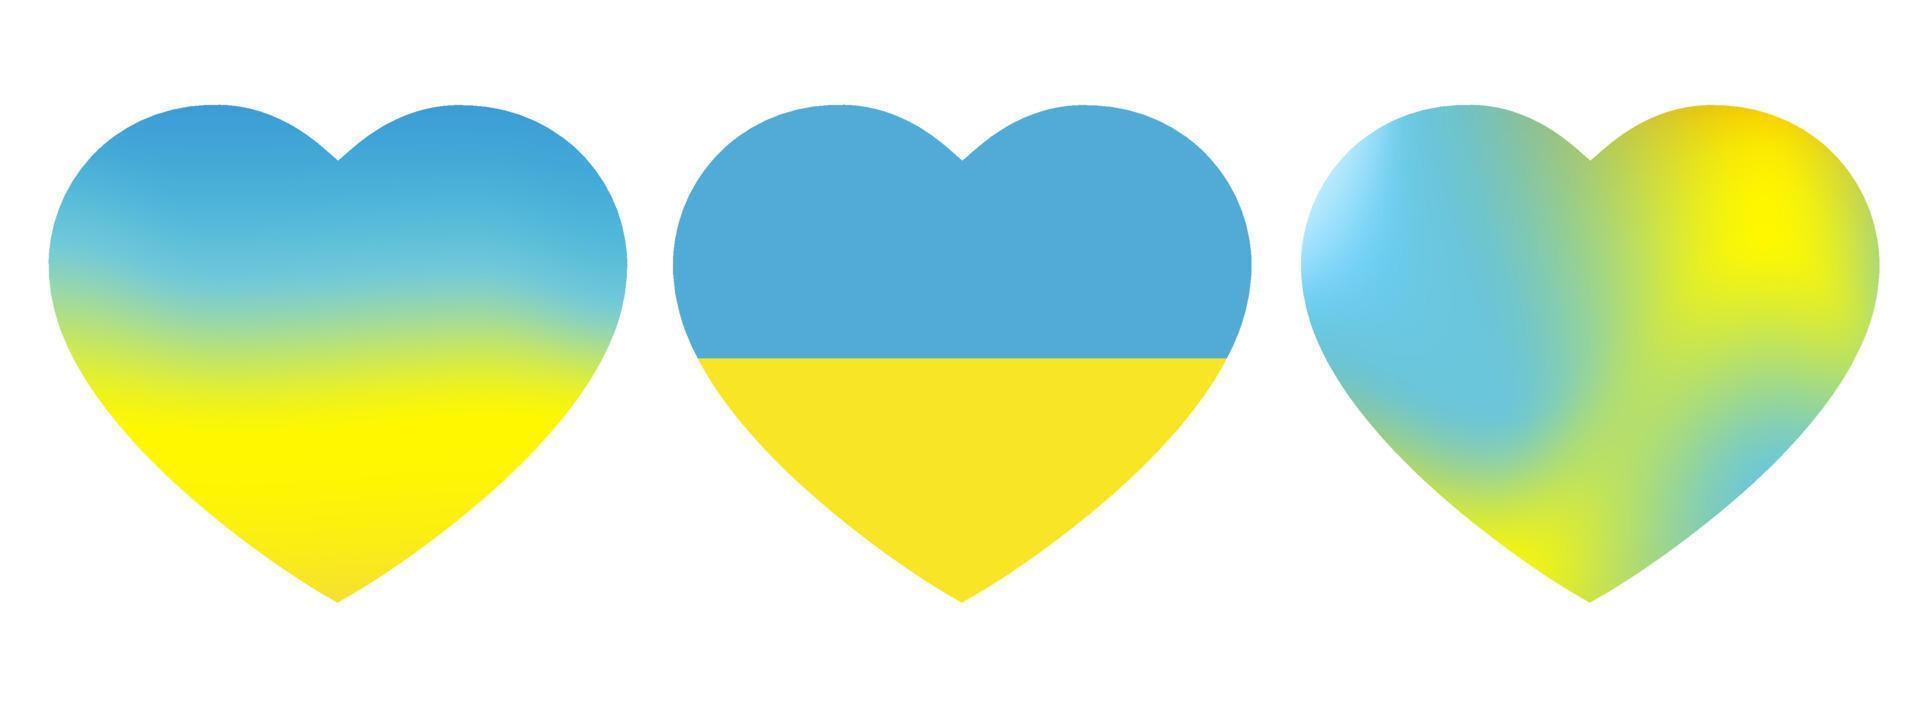 set vlag van oekraïne in de vorm van een hart. het concept van vrede in Oekraïne. vectorillustratie geïsoleerd op een witte achtergrond vector